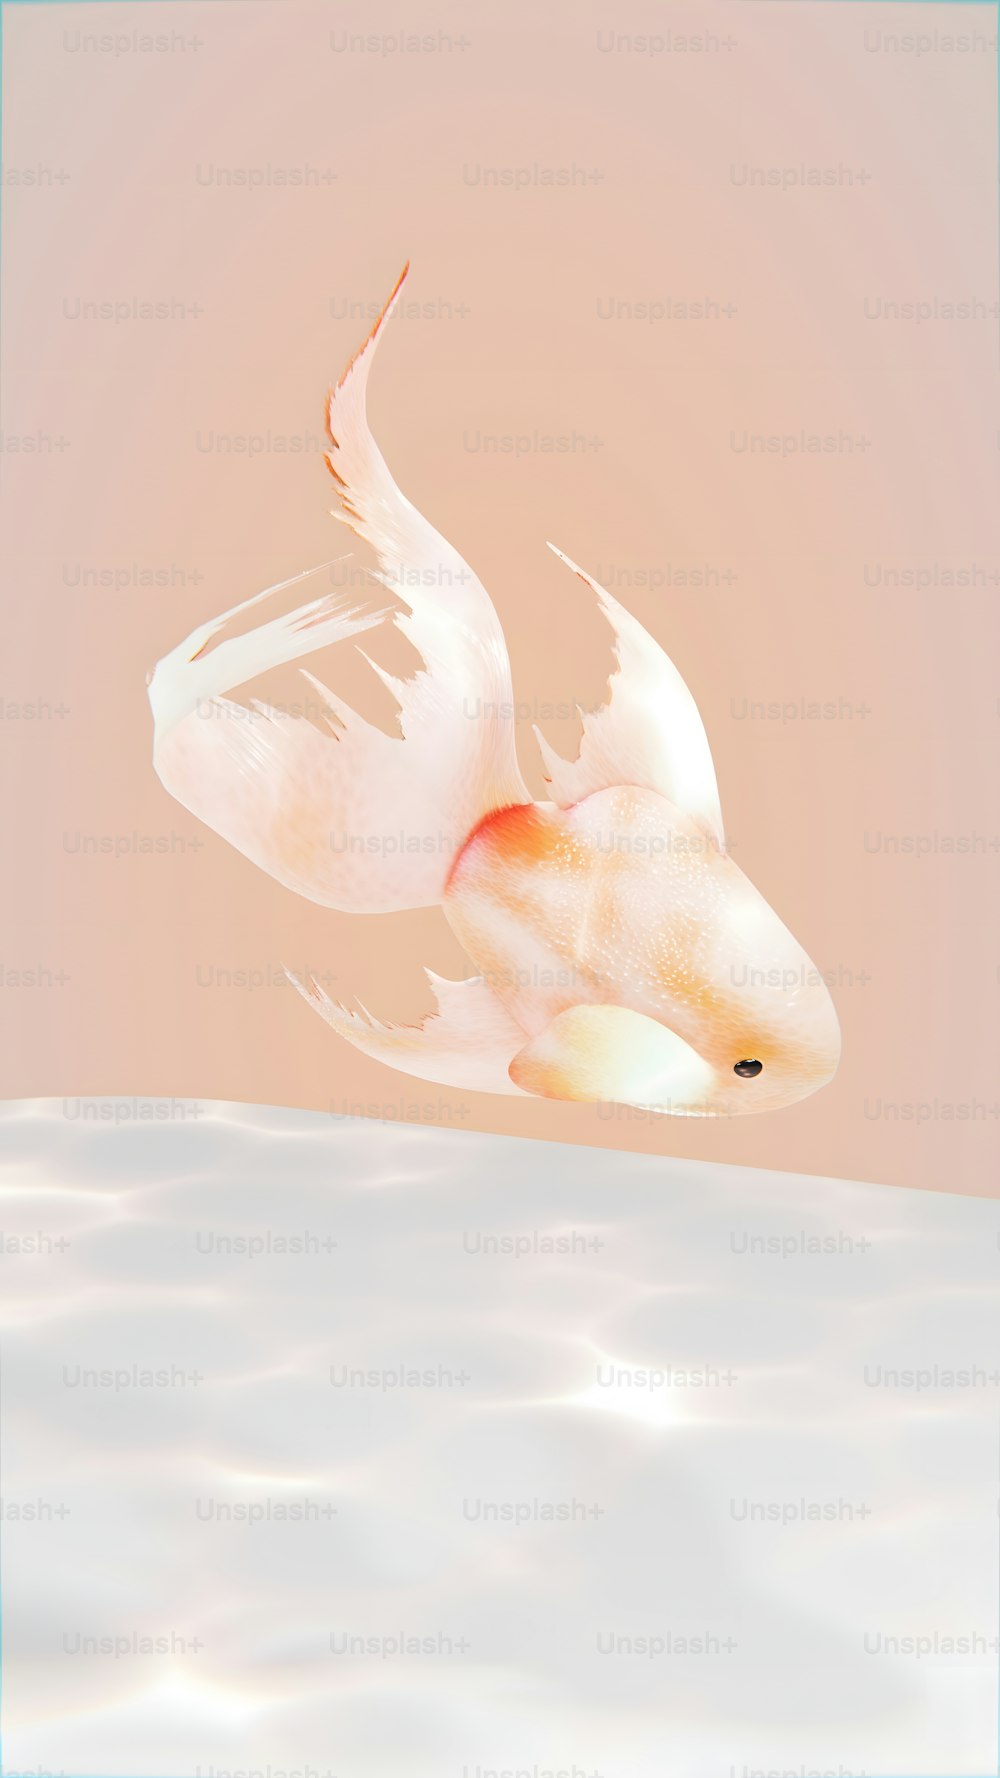 Un pez dorado con alas blancas flotando en el agua